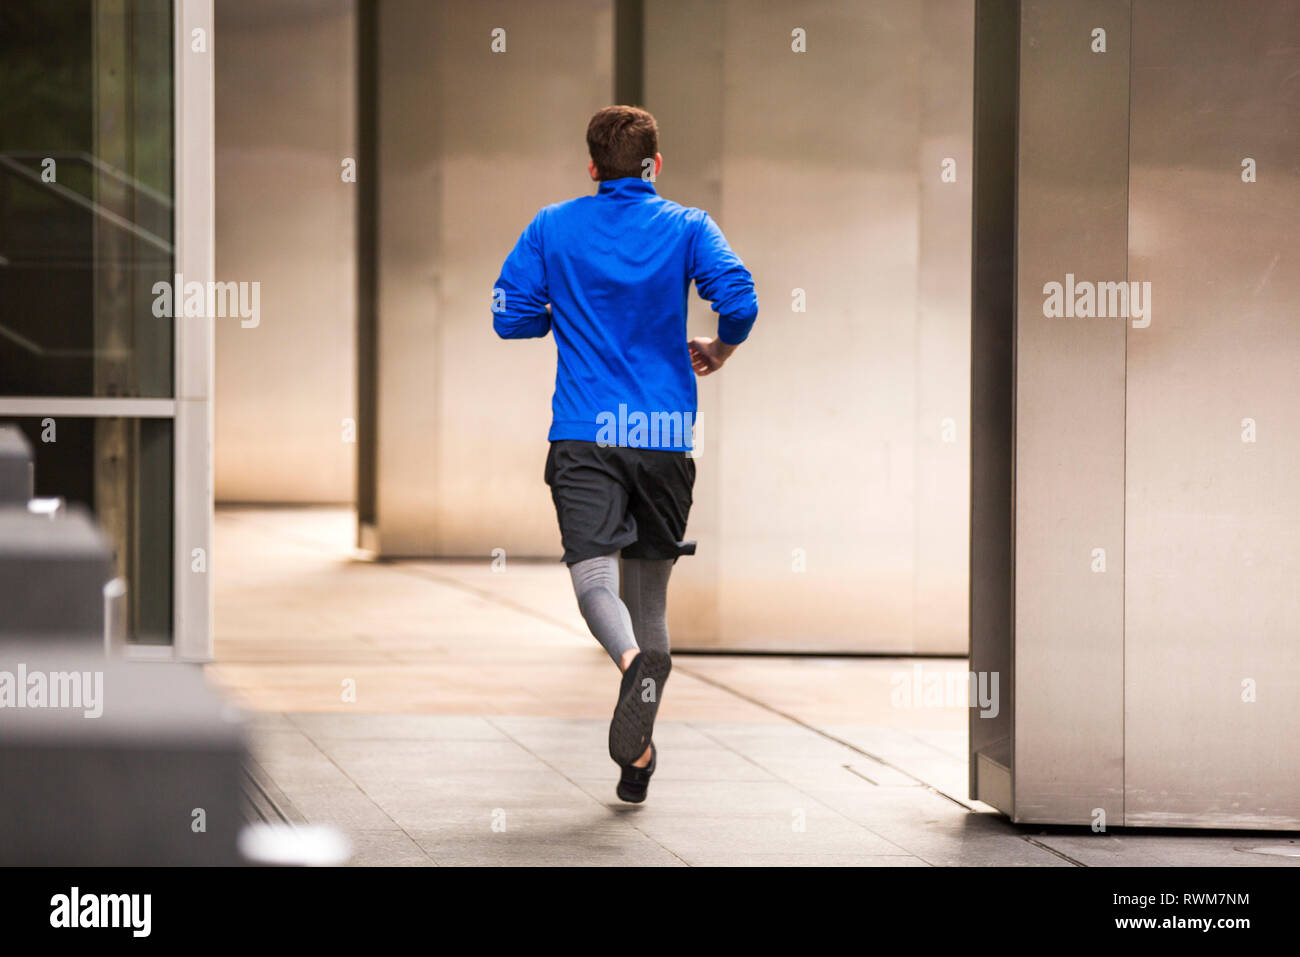 Giovani runner jogging sul marciapiede, London, Regno Unito Foto Stock